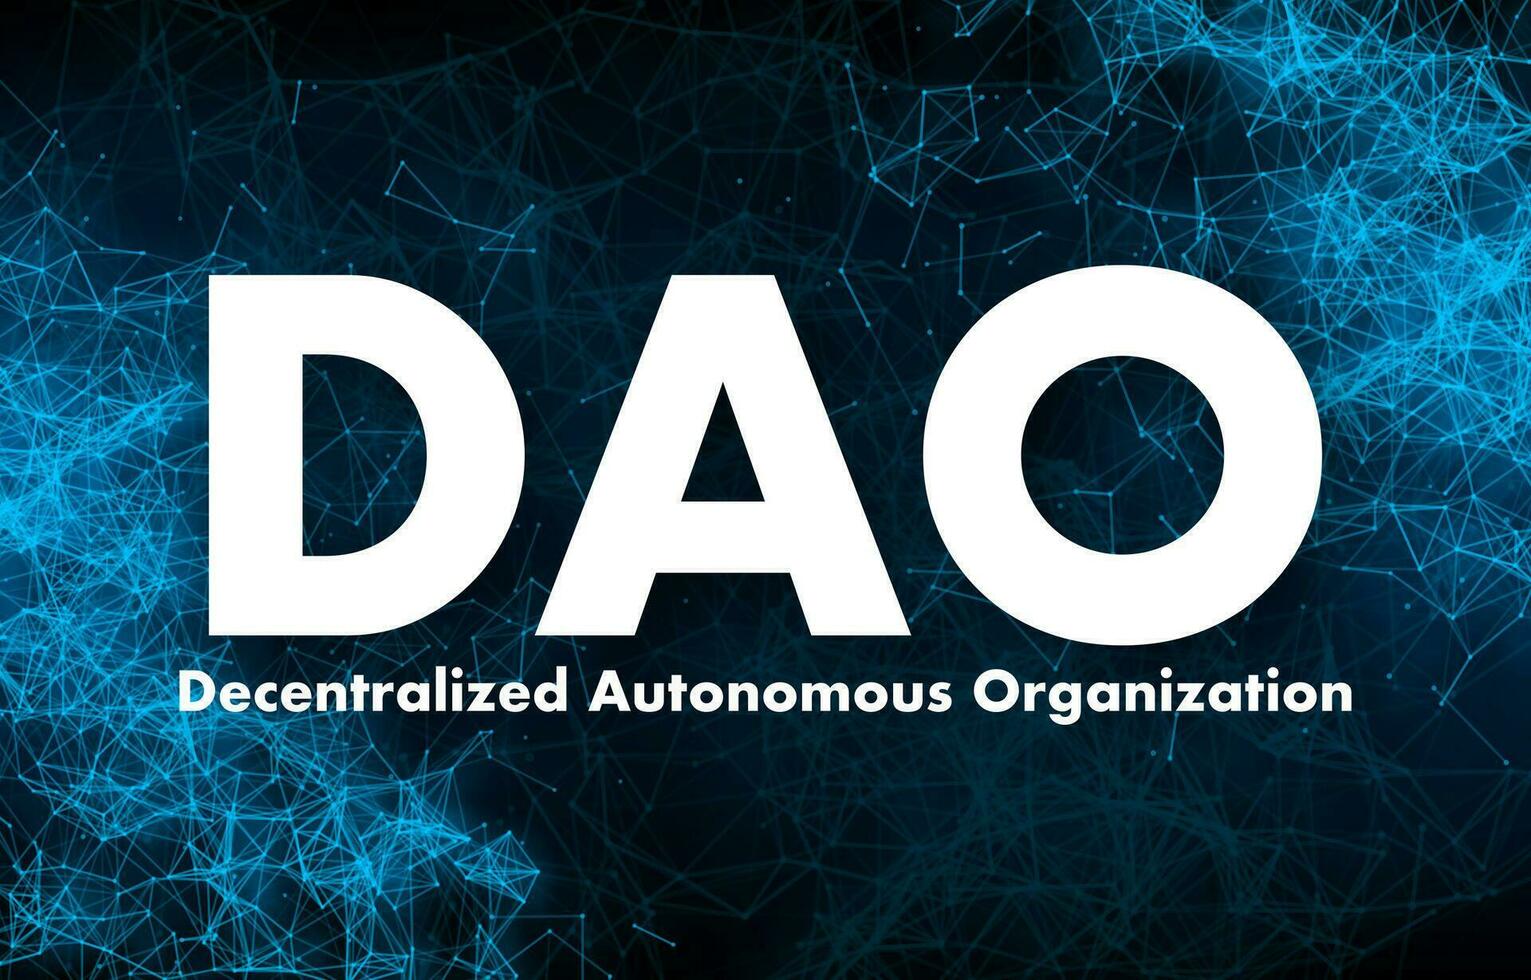 dao, gedecentraliseerd autonoom organisatie, leiderschap door code en blockchain. vector voorraad illustratie